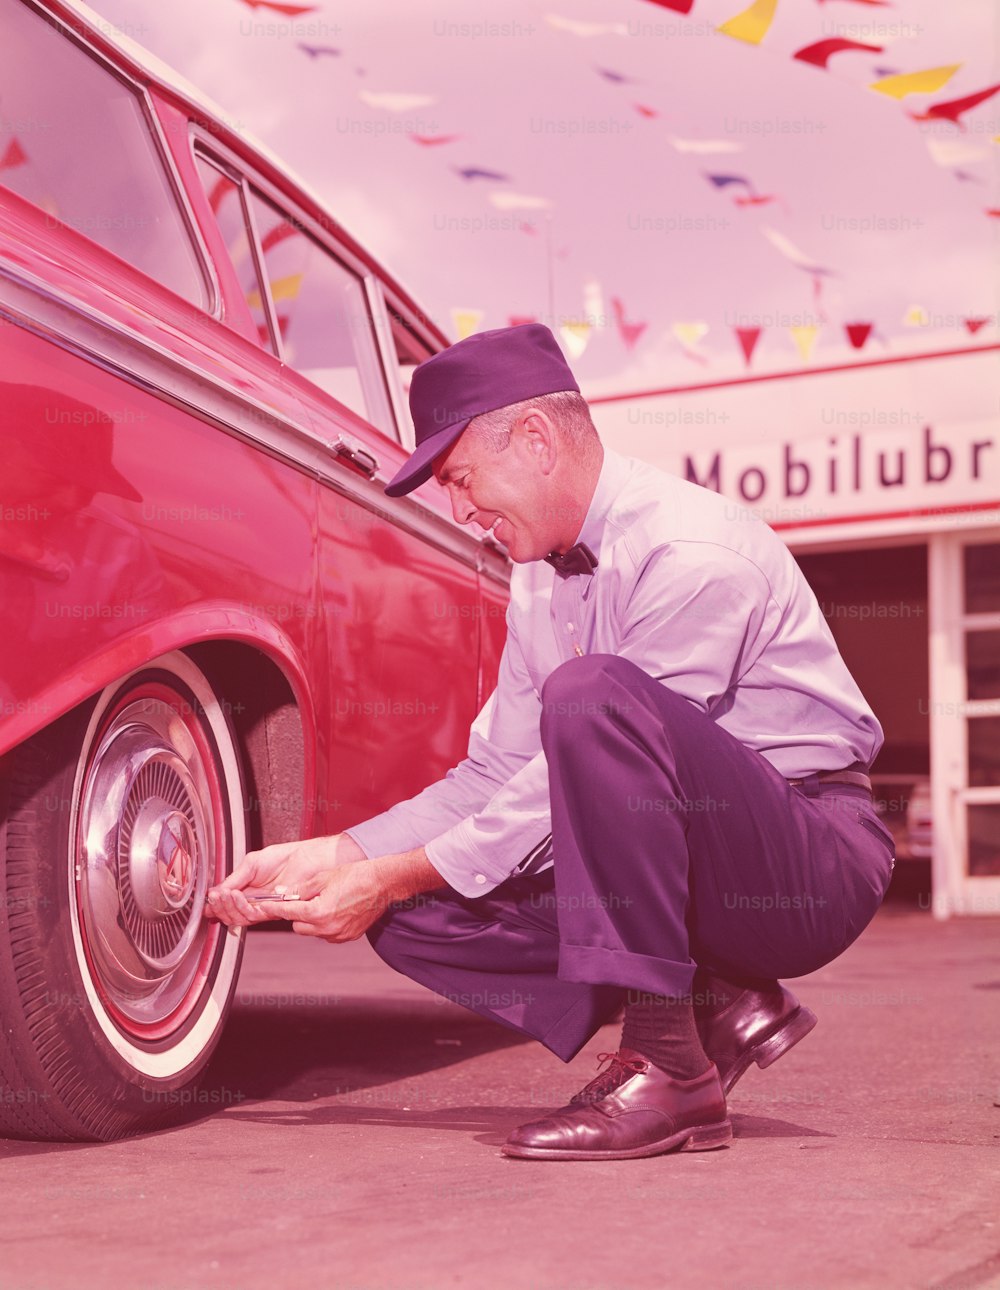 STATI UNITI - 1960 CIRCA: Addetto alla stazione di servizio che controlla la pressione dell'aria nei pneumatici dell'auto.